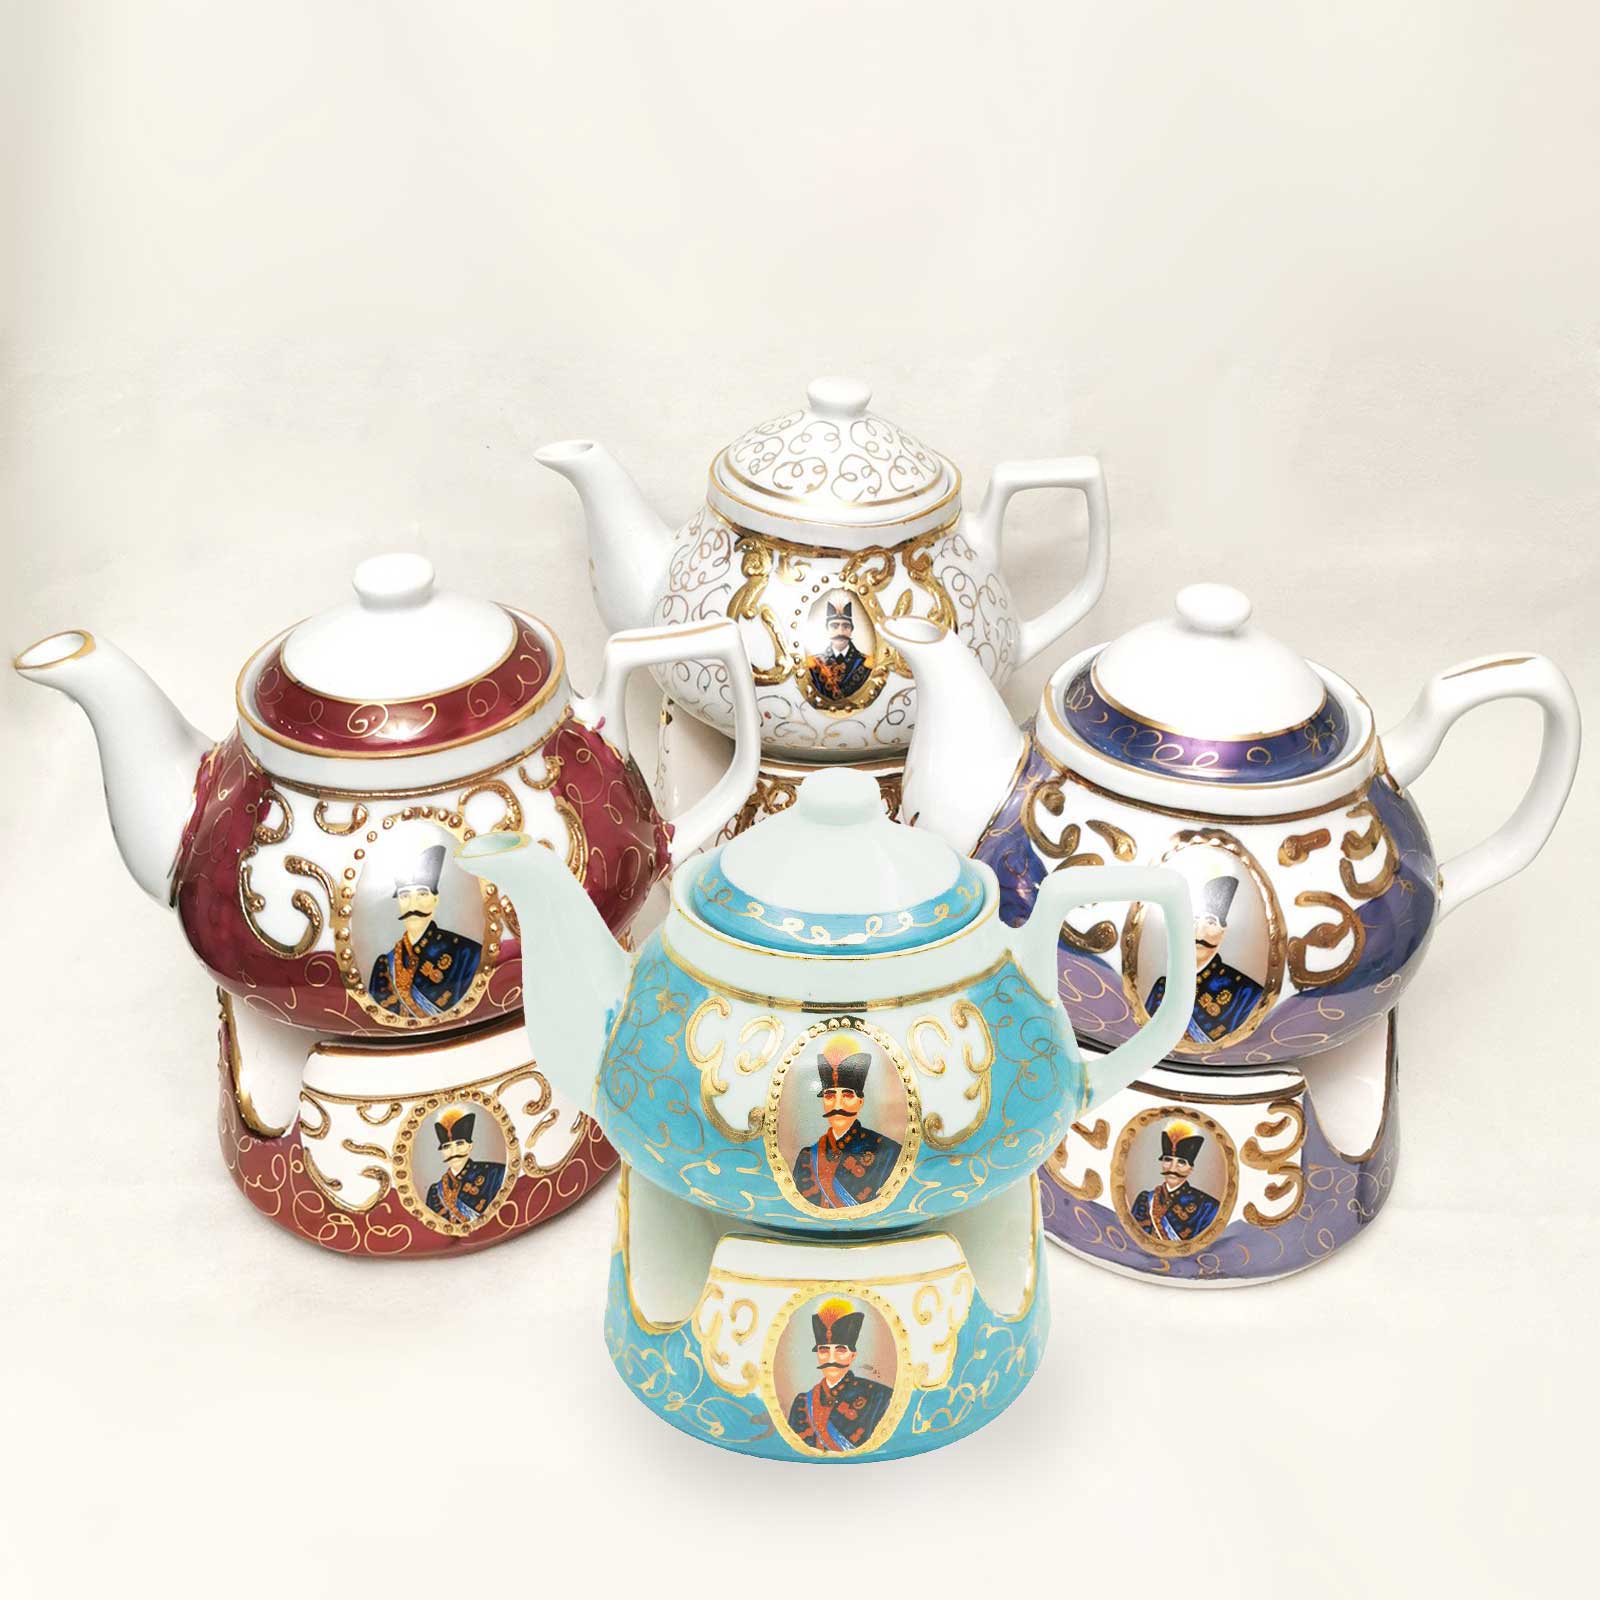 Persian Teapot and Warmer - Iranian Tea Pot- Shah Abbas